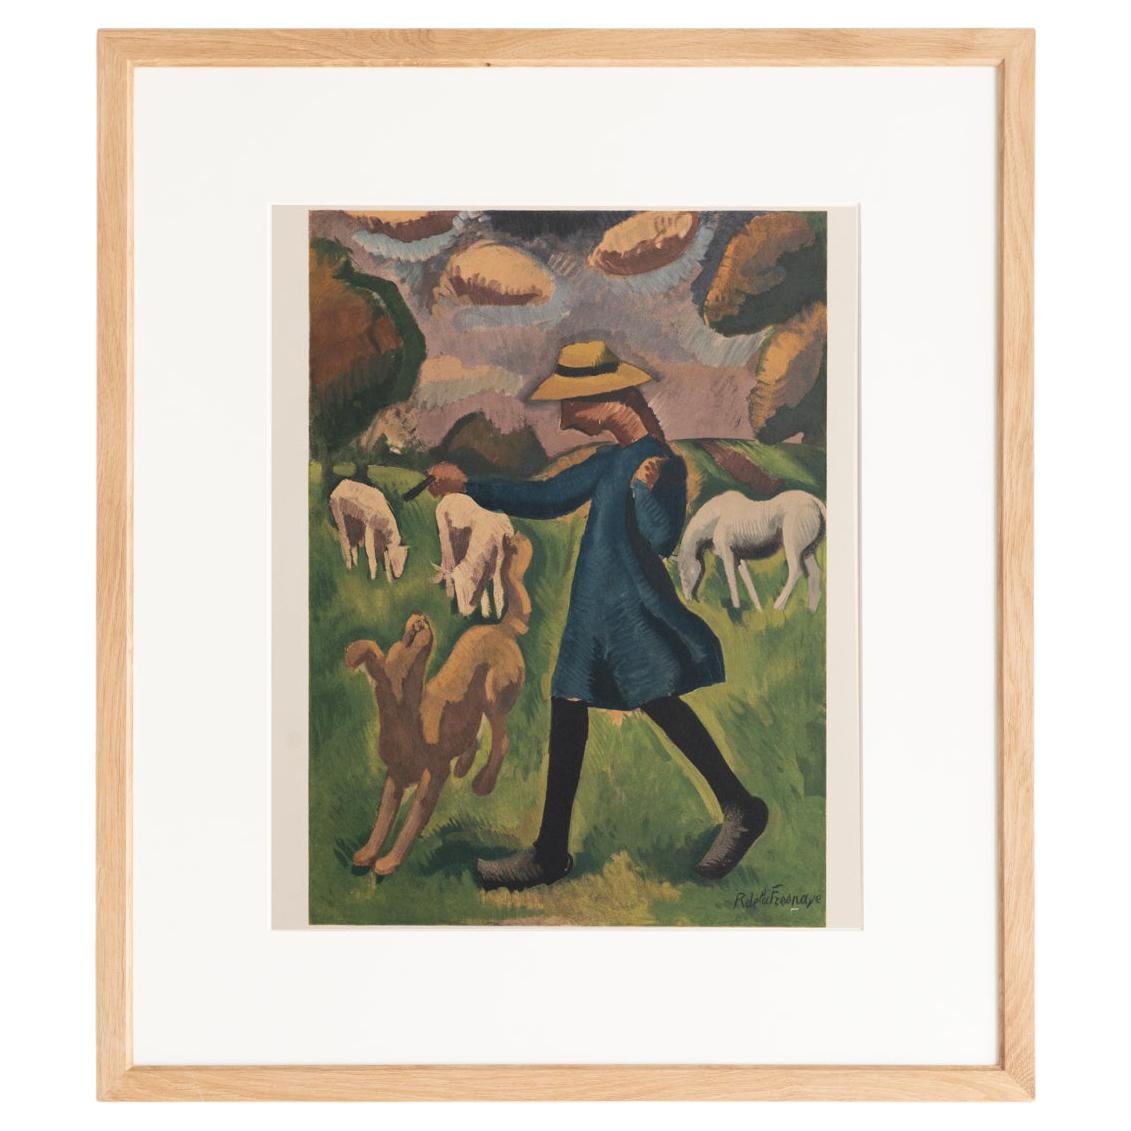 Roger de la Fresnaye 'La Gardeuse de Moutons' Gerahmte Lithographie, um 1968